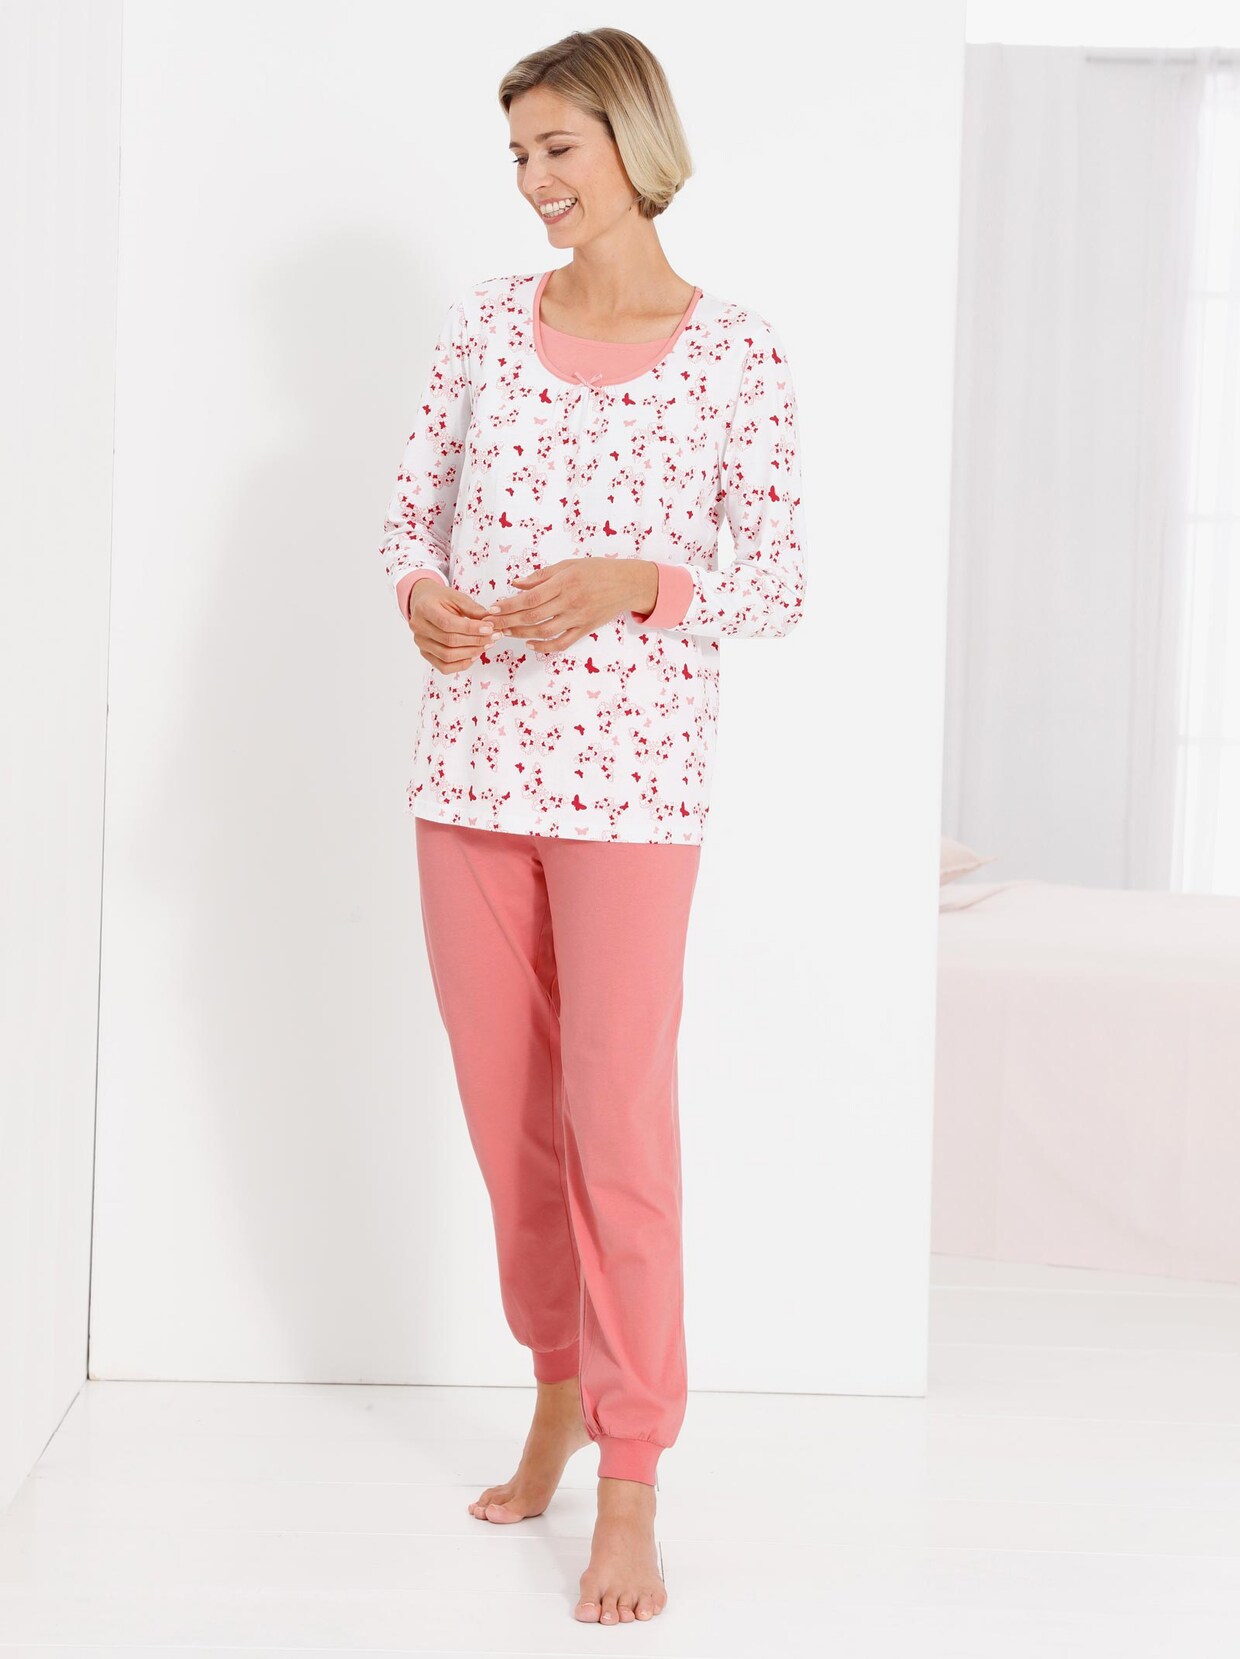 wäschepur Schlafanzüge - flieder-bedruckt + flamingo-bedruckt